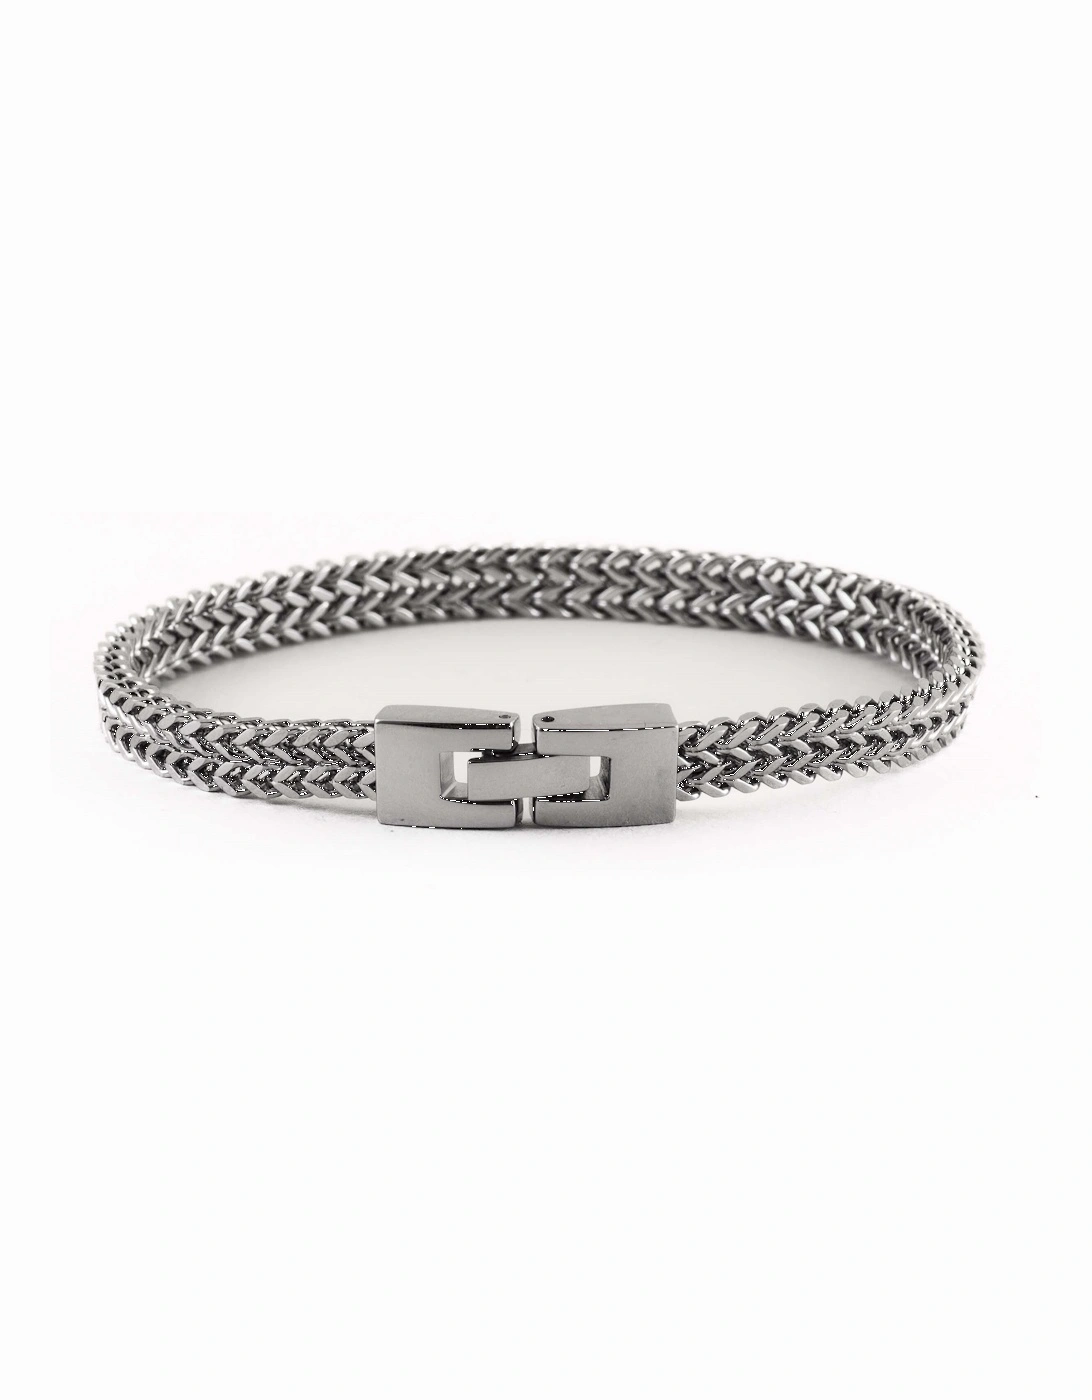 21cm Stainless Steel Keel Link Bracelet, 2 of 1